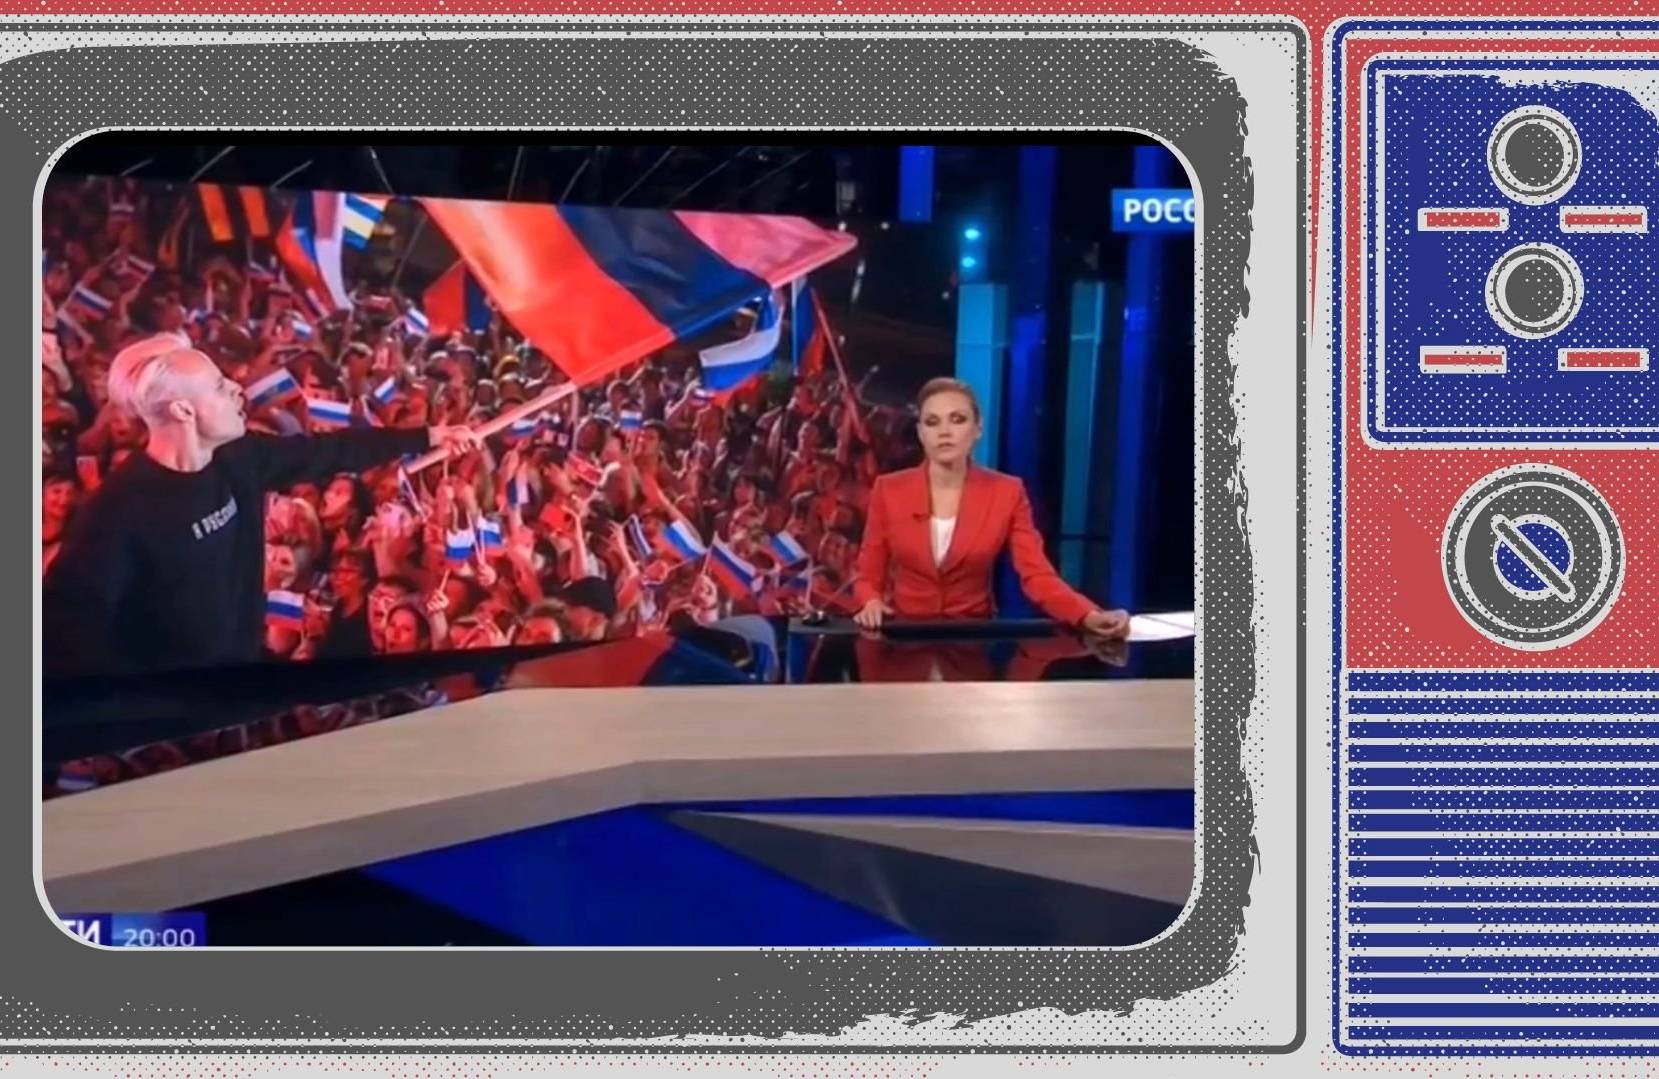 Grafika: migawka z blond-piosenkarzem machającym rosyjjską flagą w ramce starego telewizora